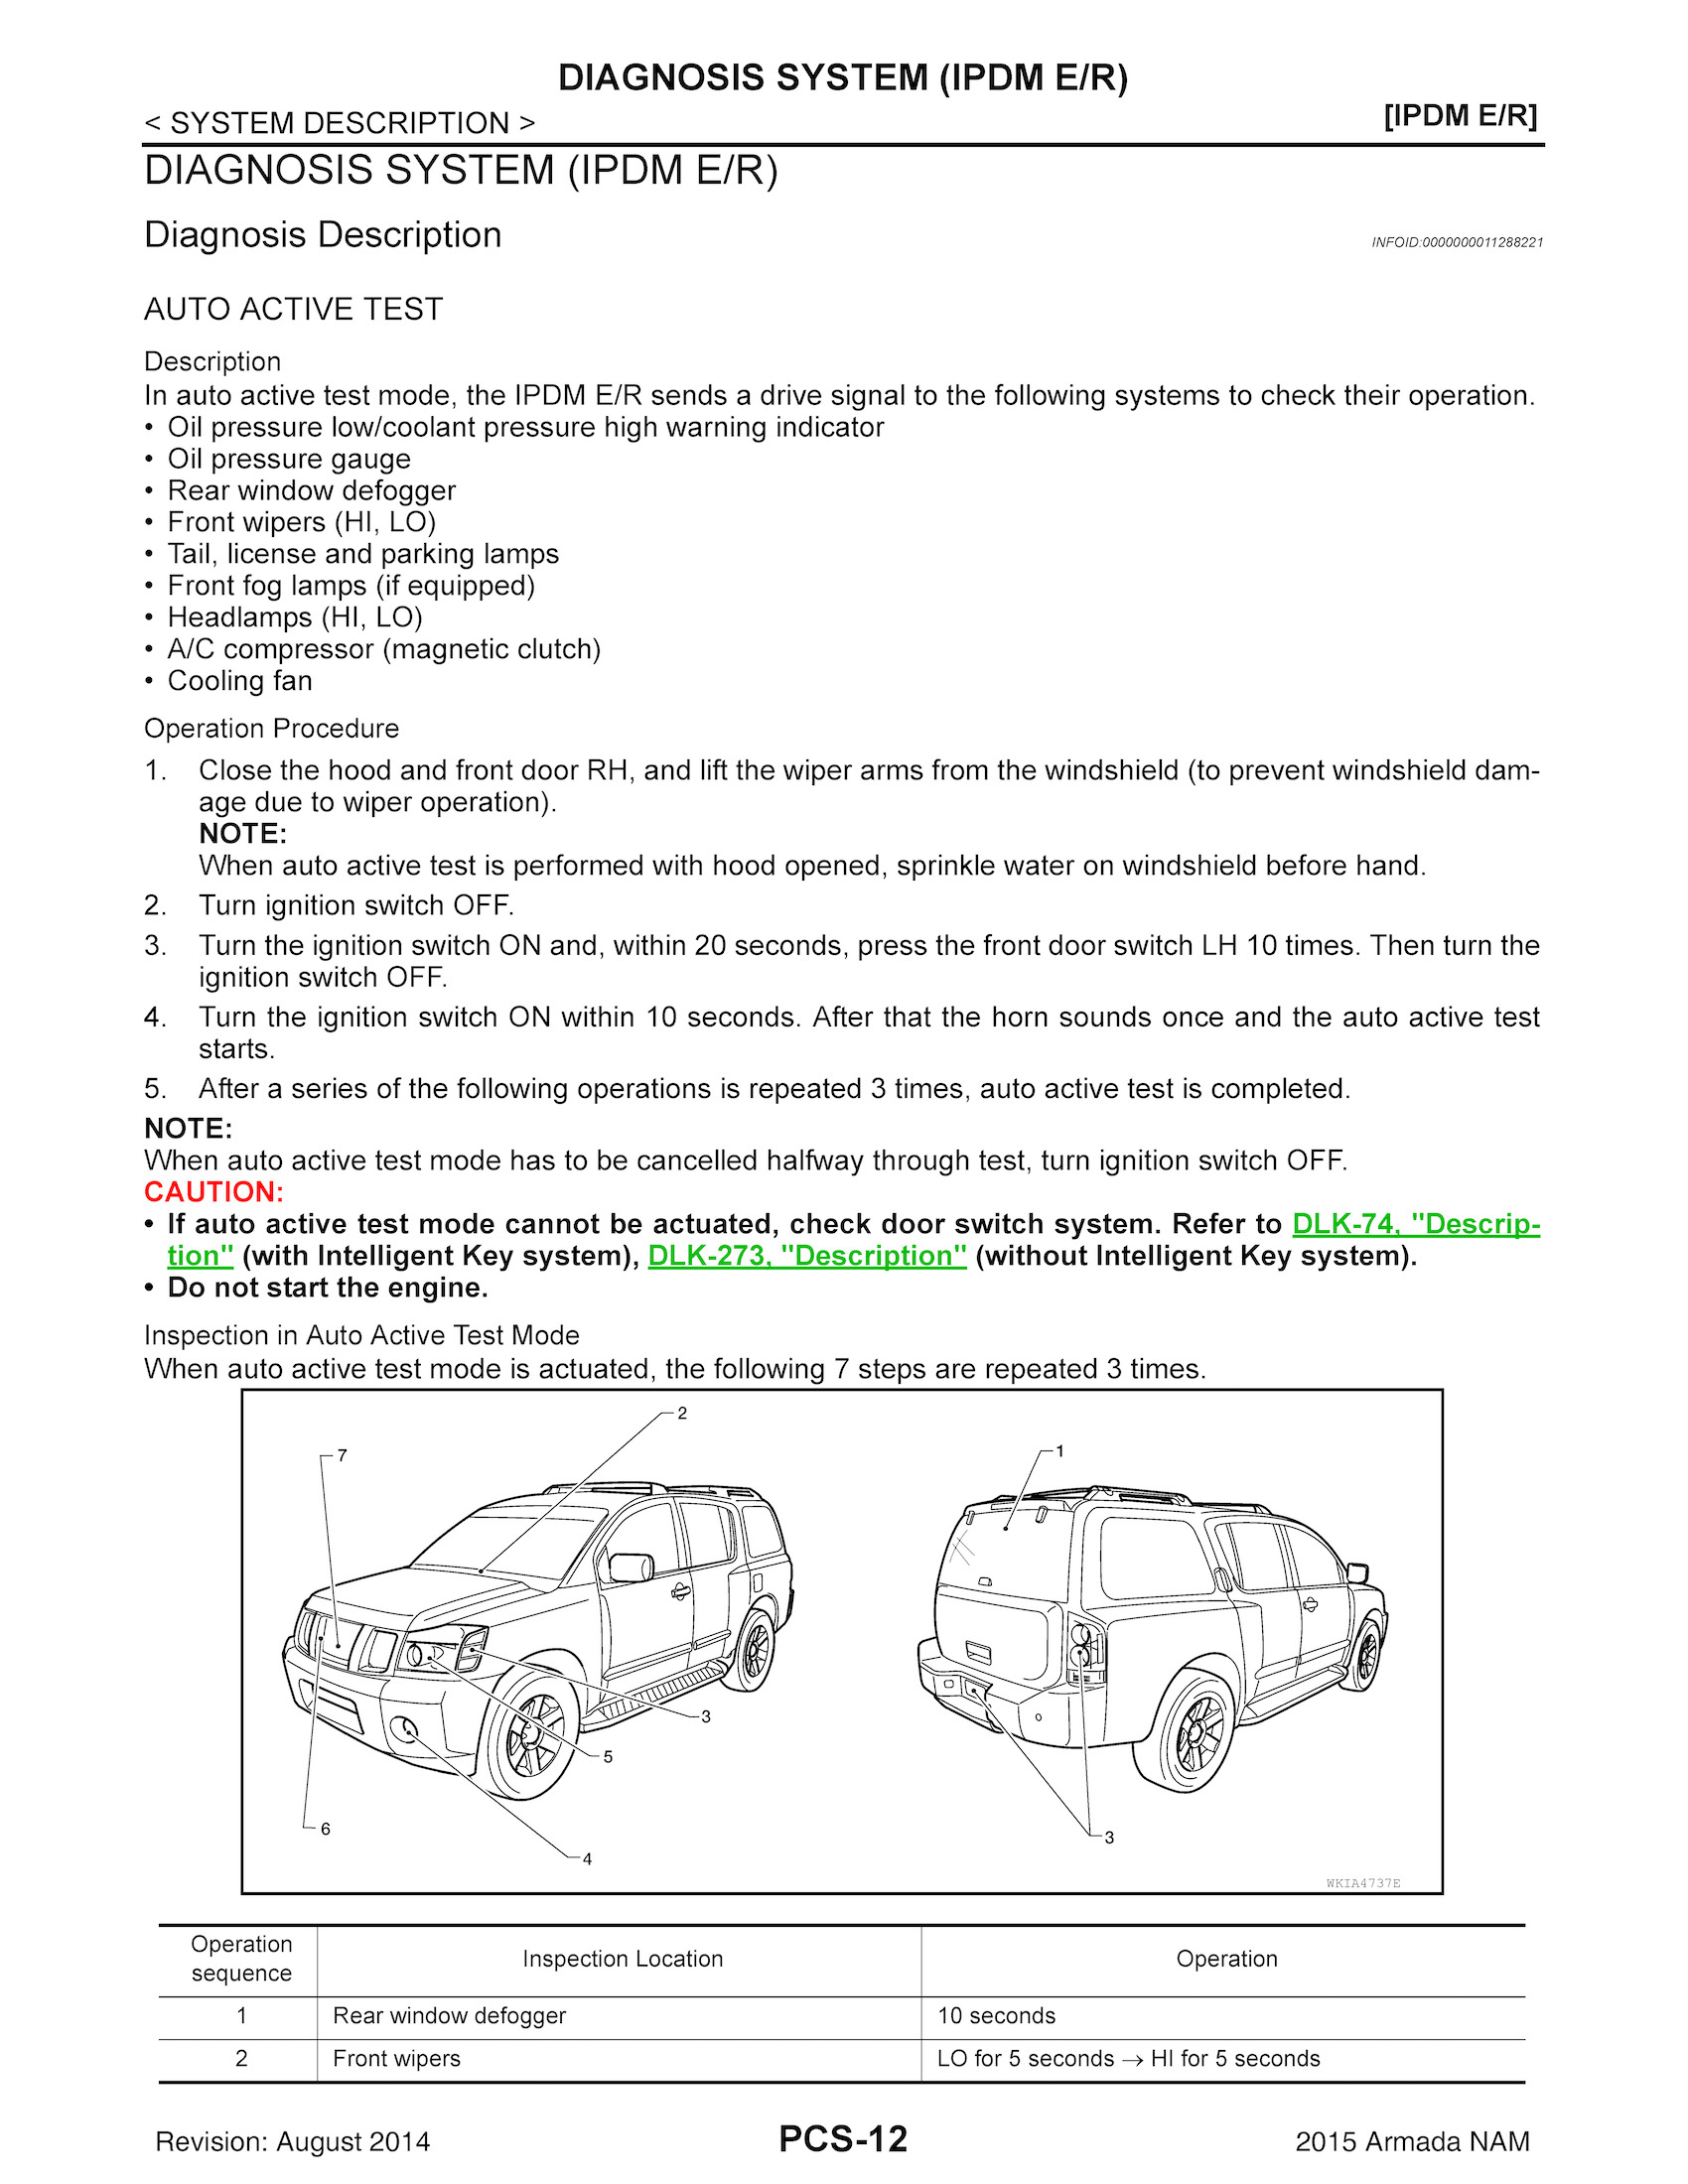 2015 Nissan Armada Repair Manual, Diagnosis System (IPDM E/R)